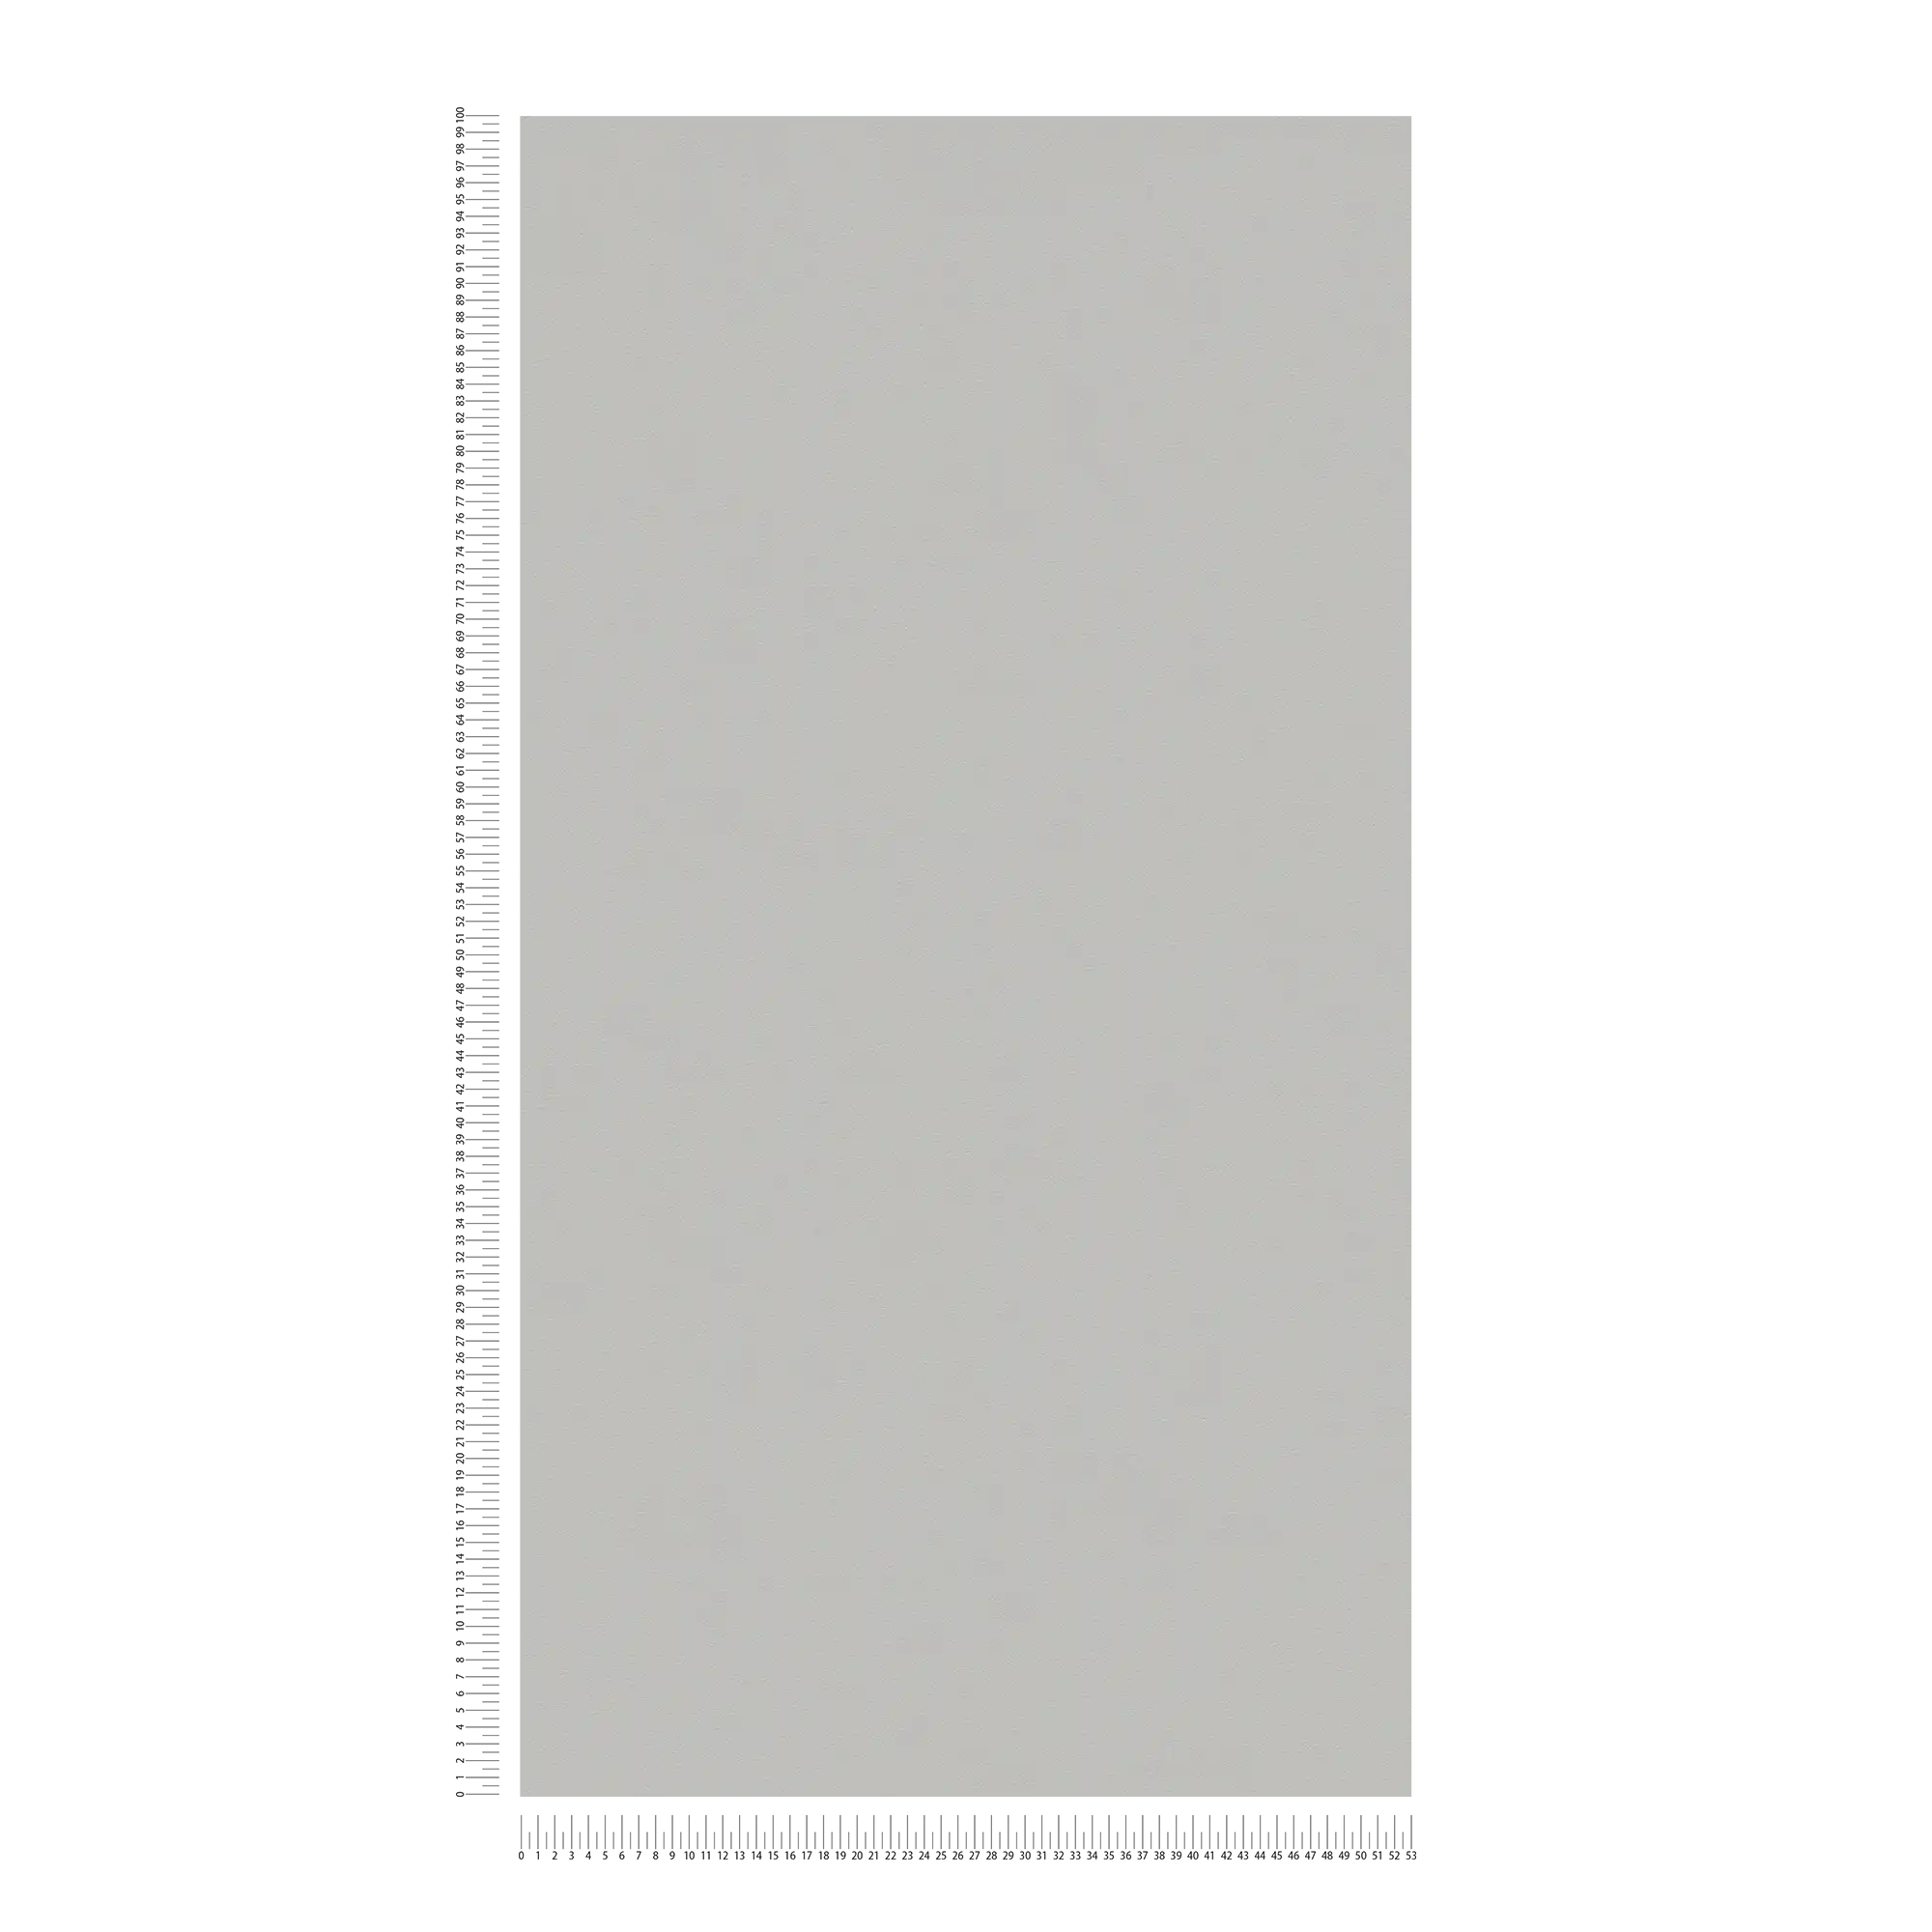             Papier peint gris uni avec texture de surface mate
        